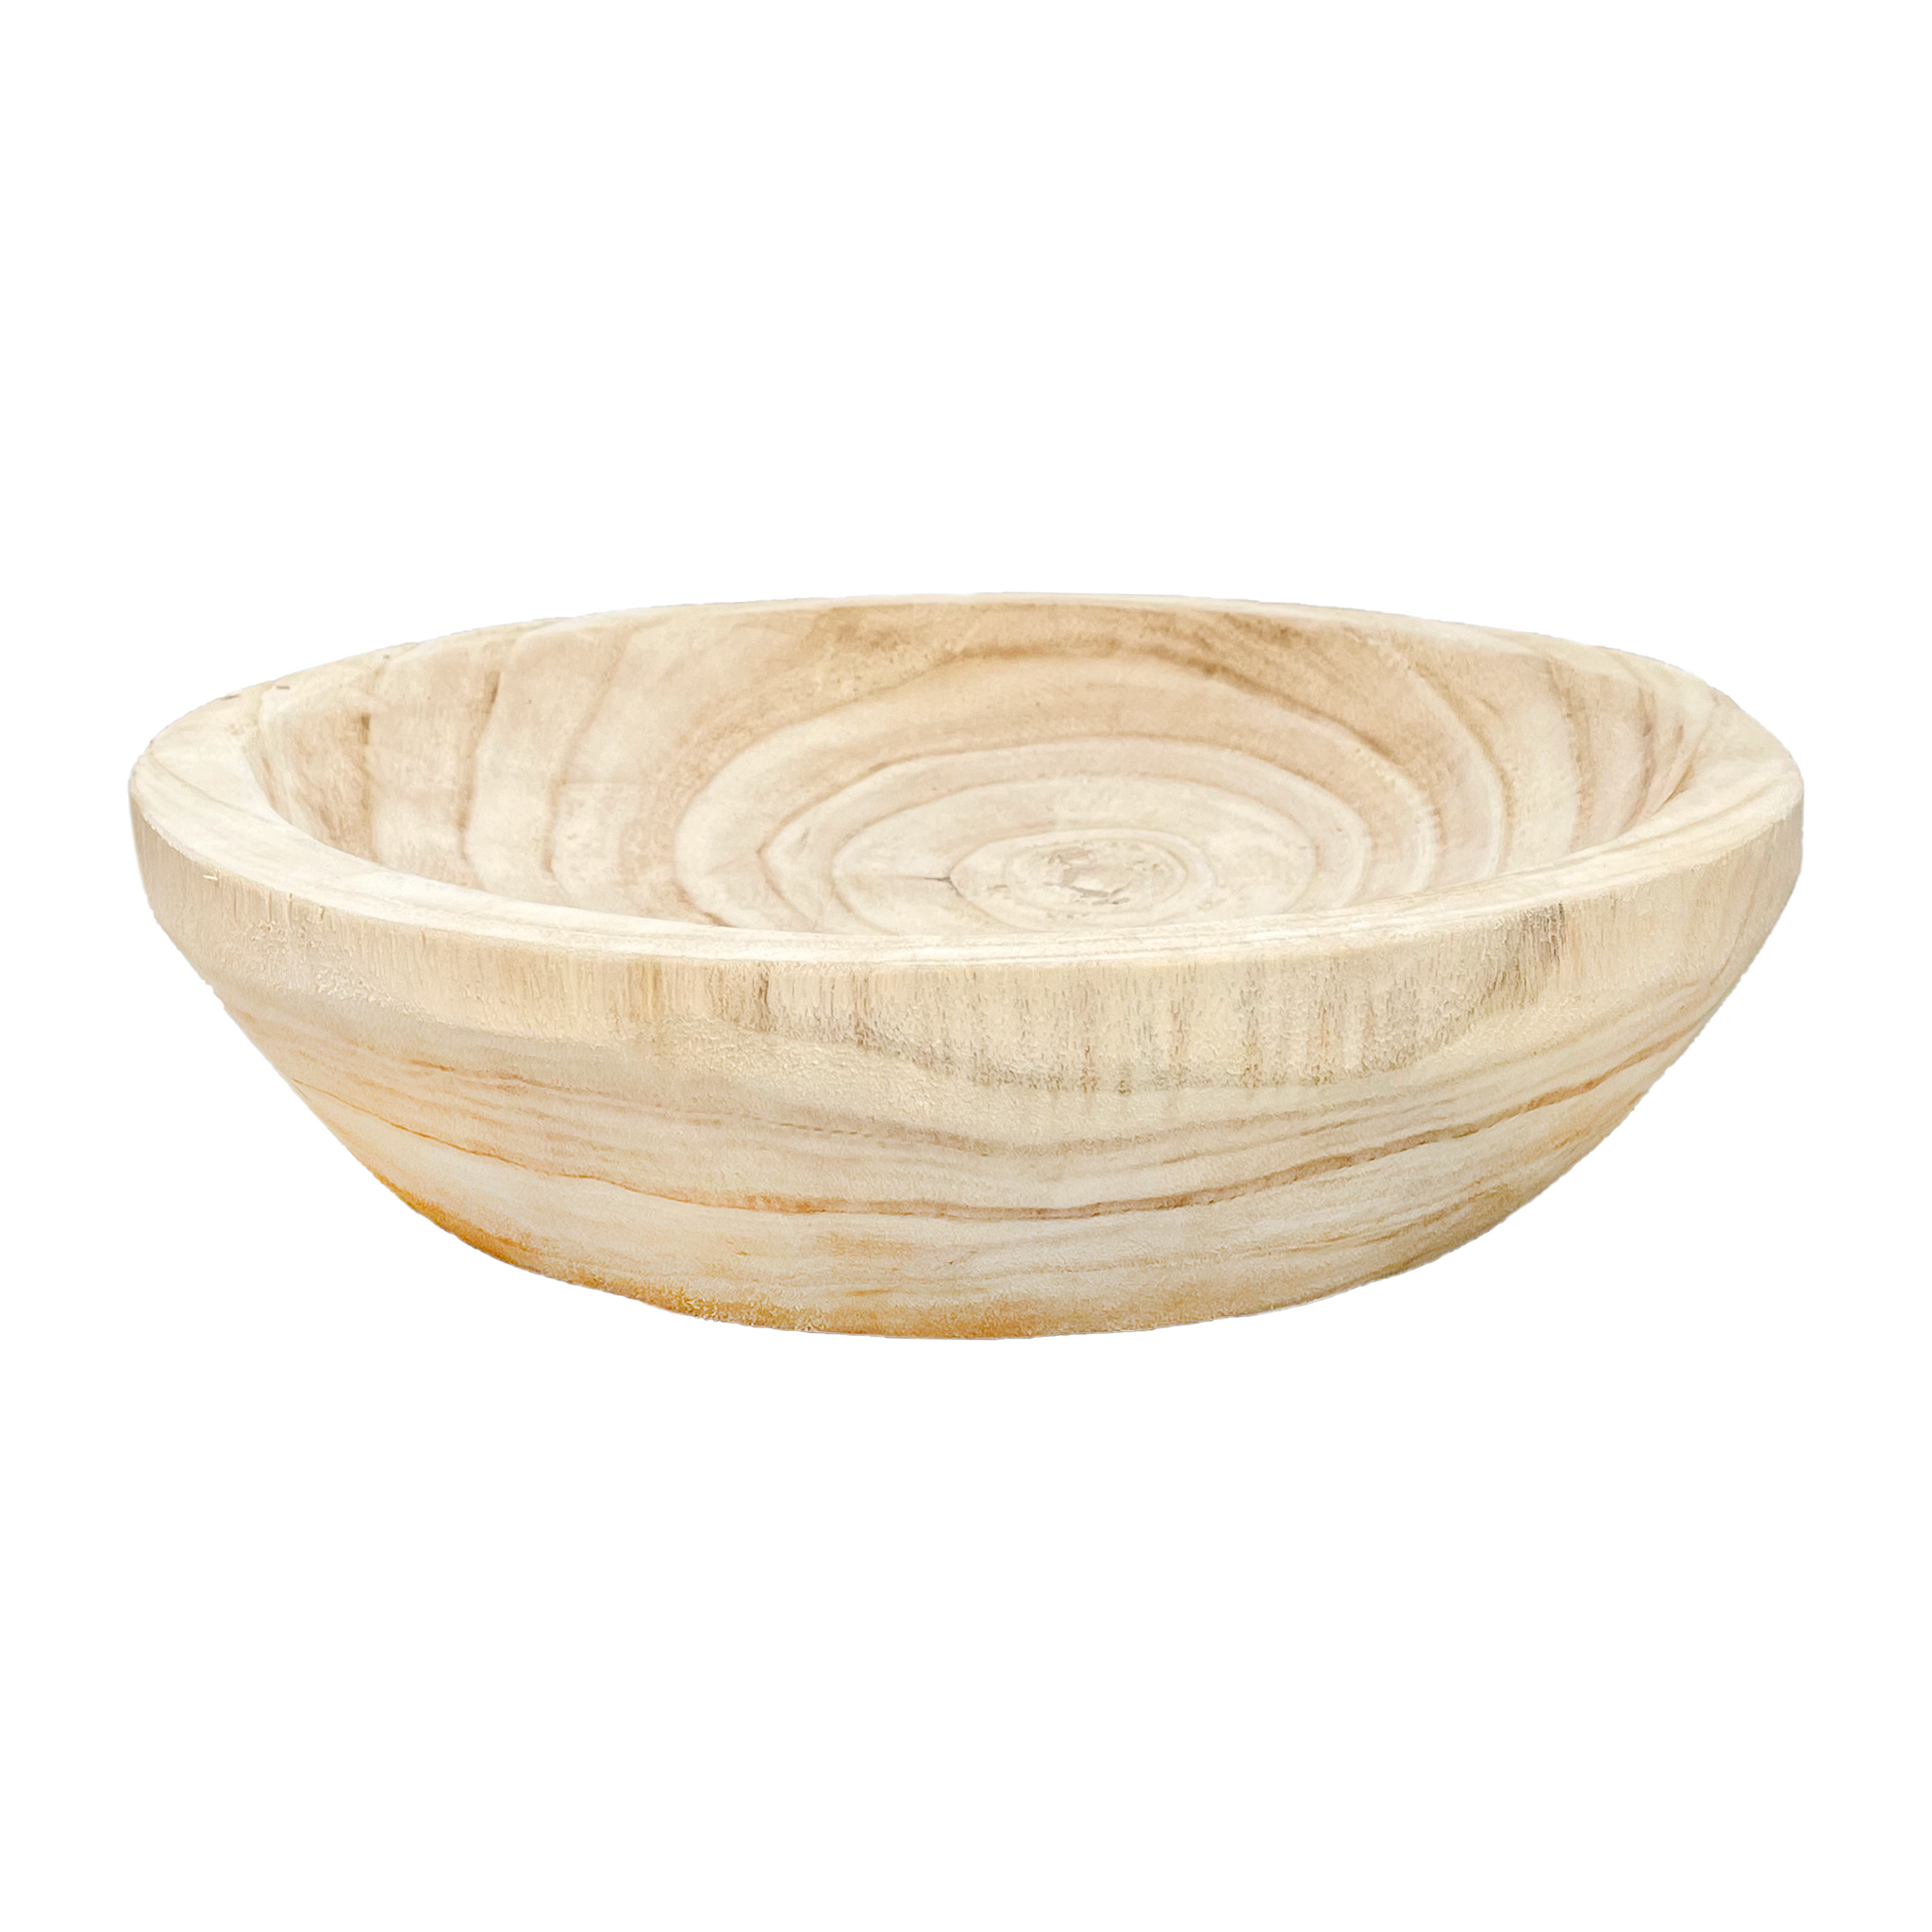 Large Round Wood Bowl